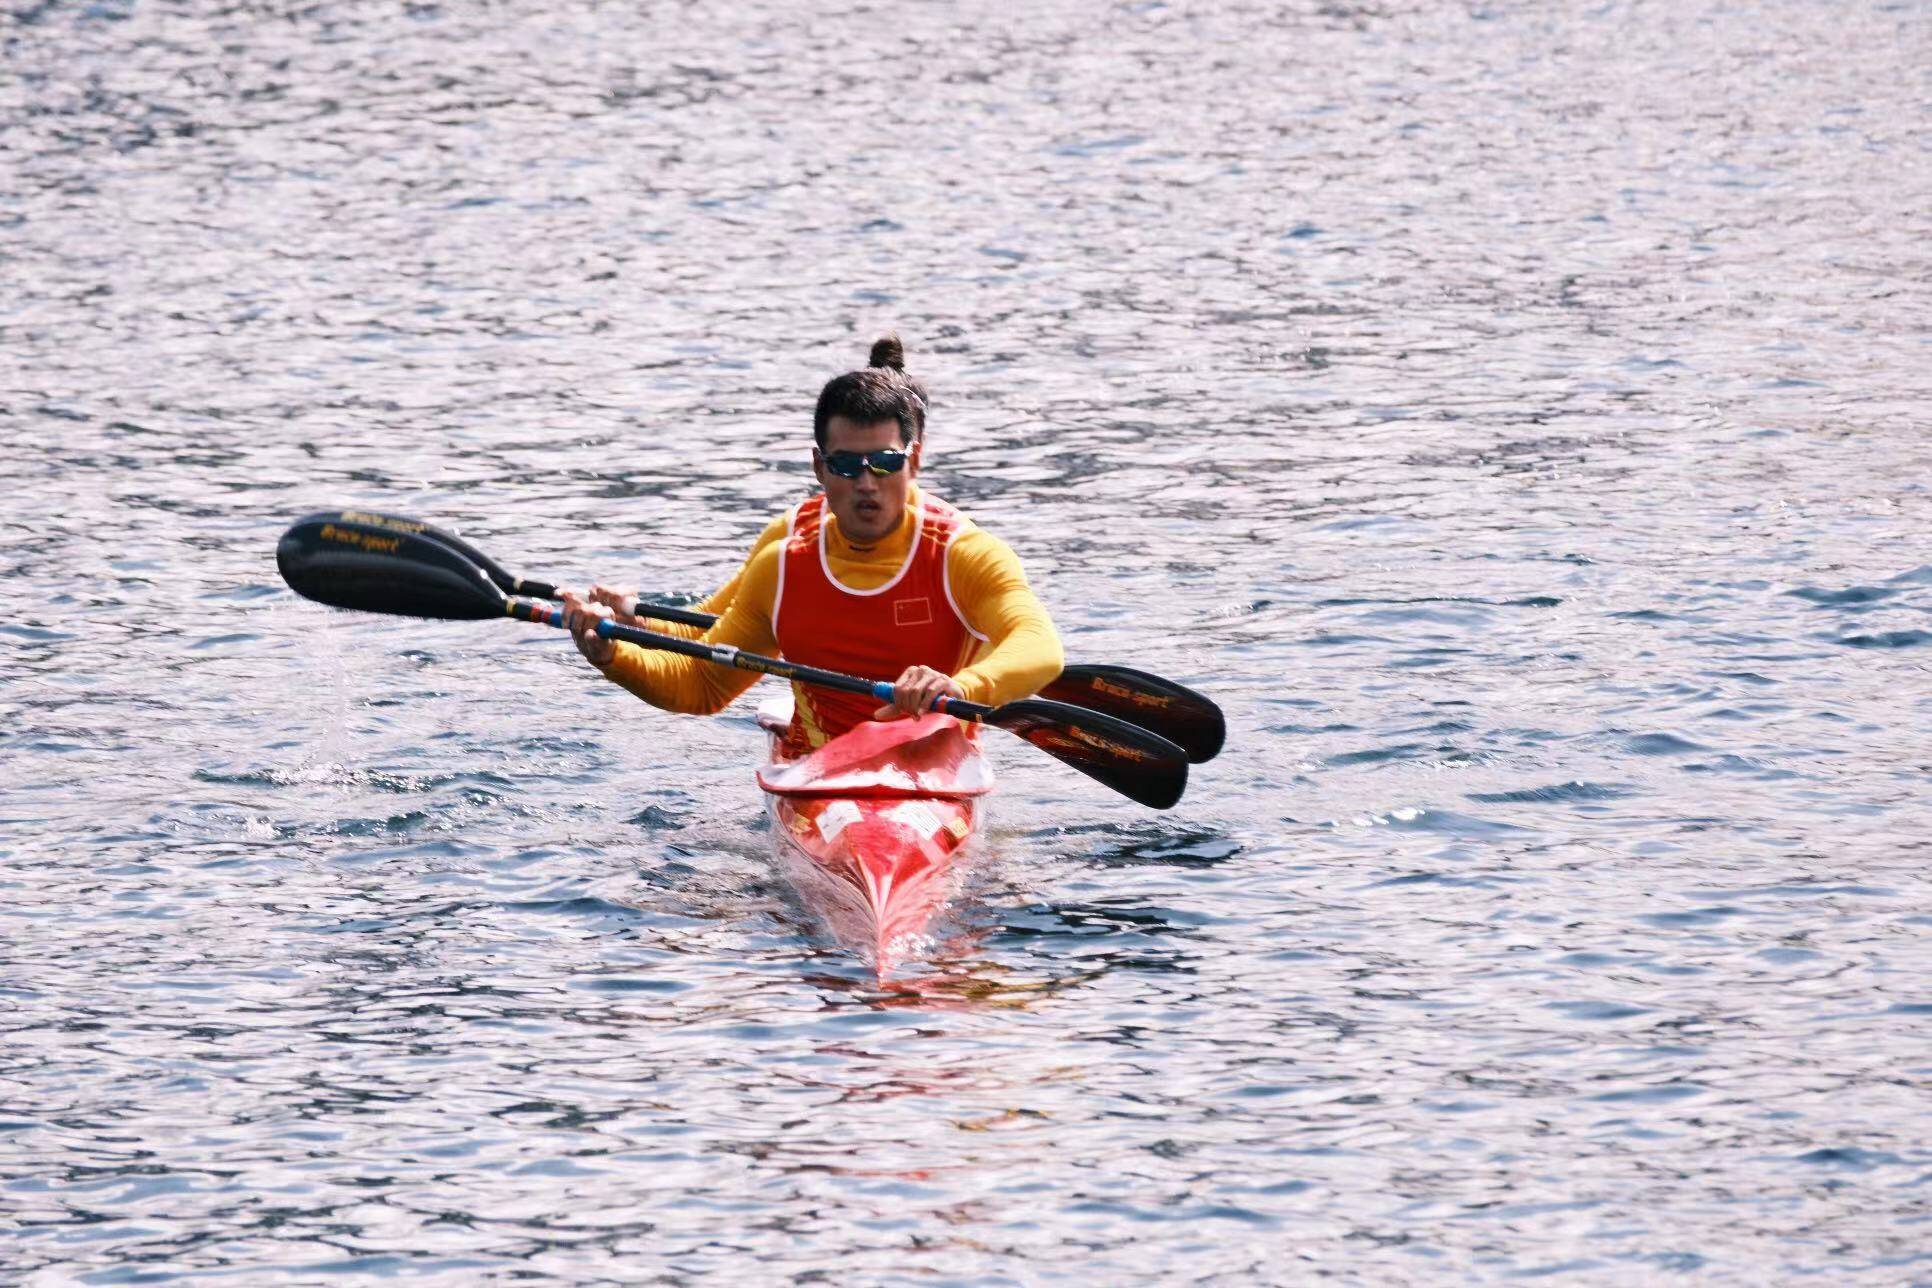 王驰和队友获皮划艇静水世界锦标赛混合双人皮艇500米第八名 水上项目成为菏泽竞技体育的优势项目